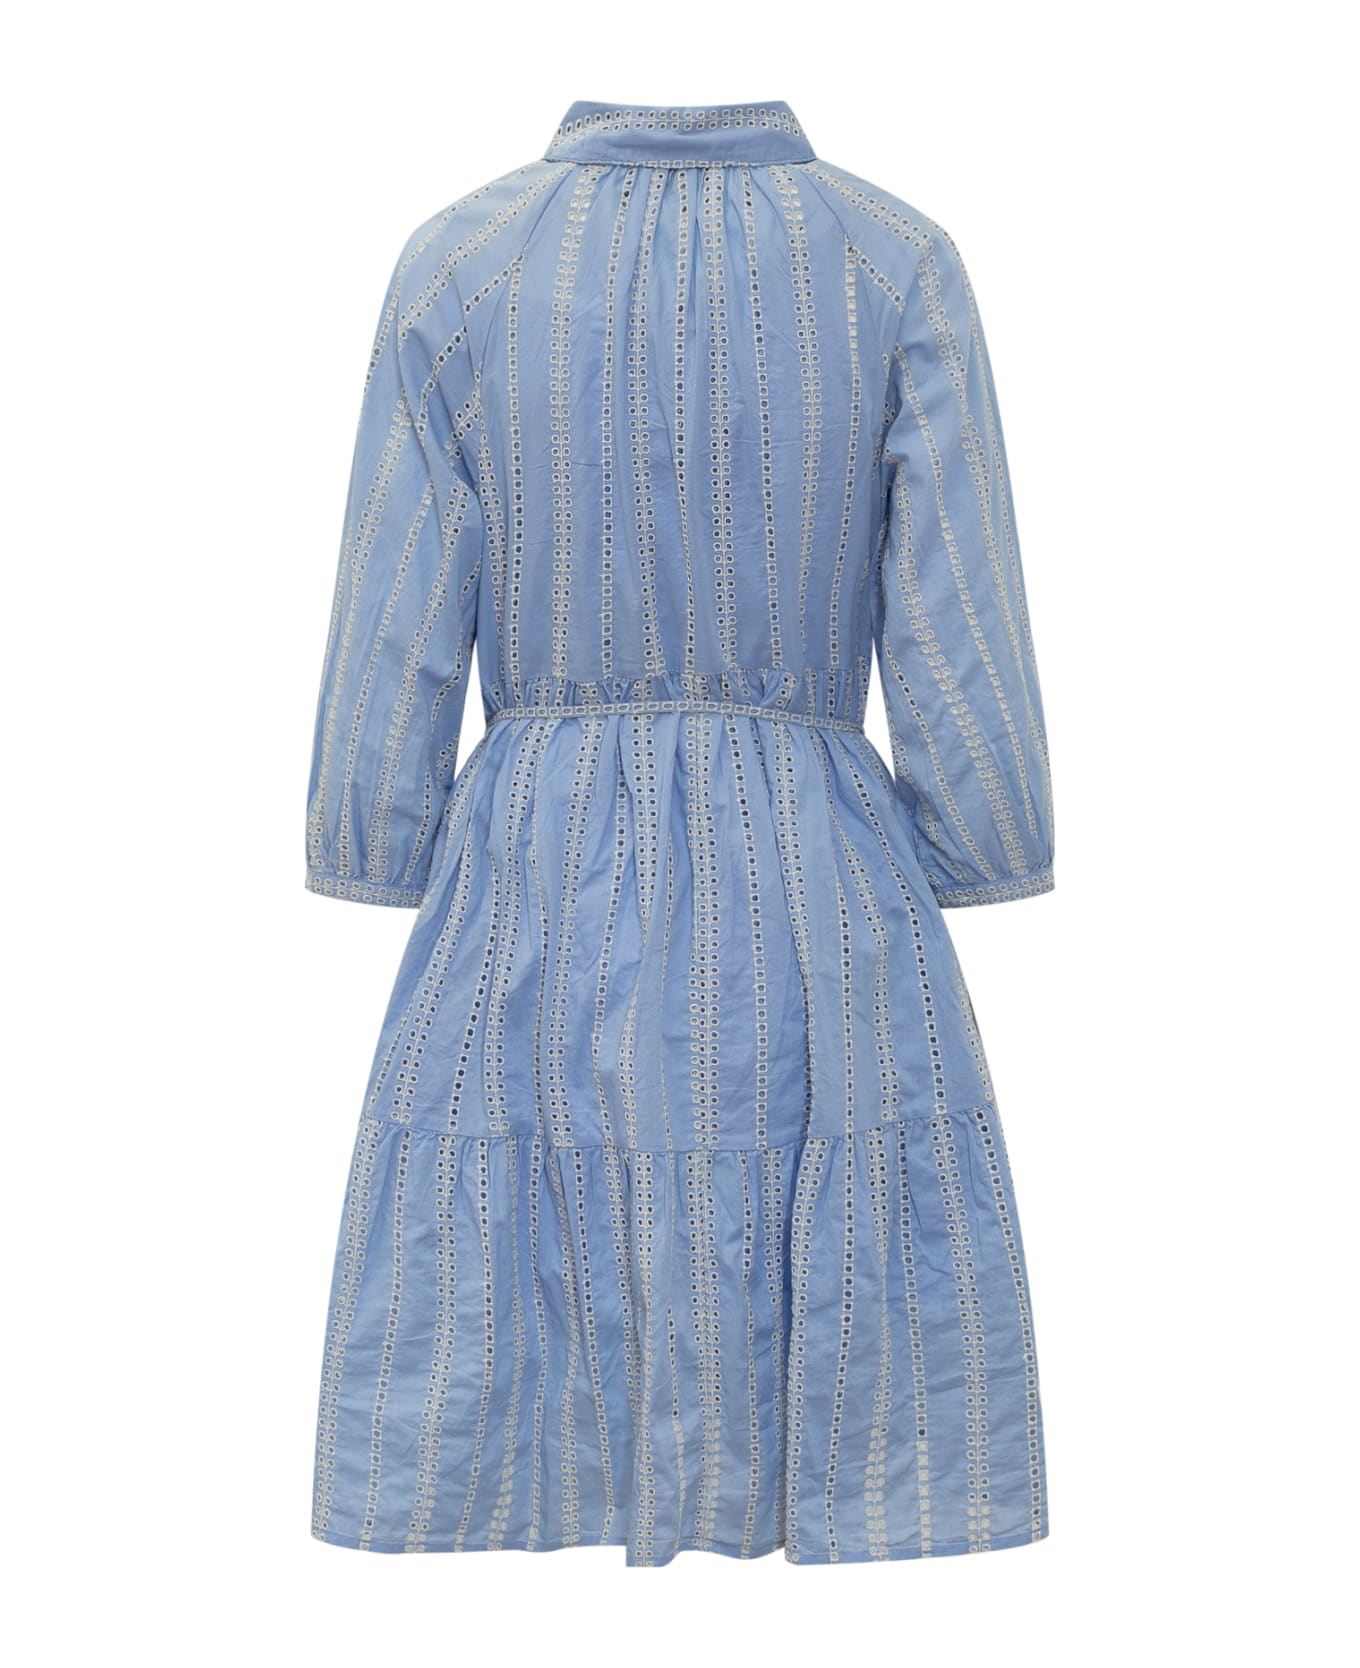 Woolrich Broderie Over Dress - Blue